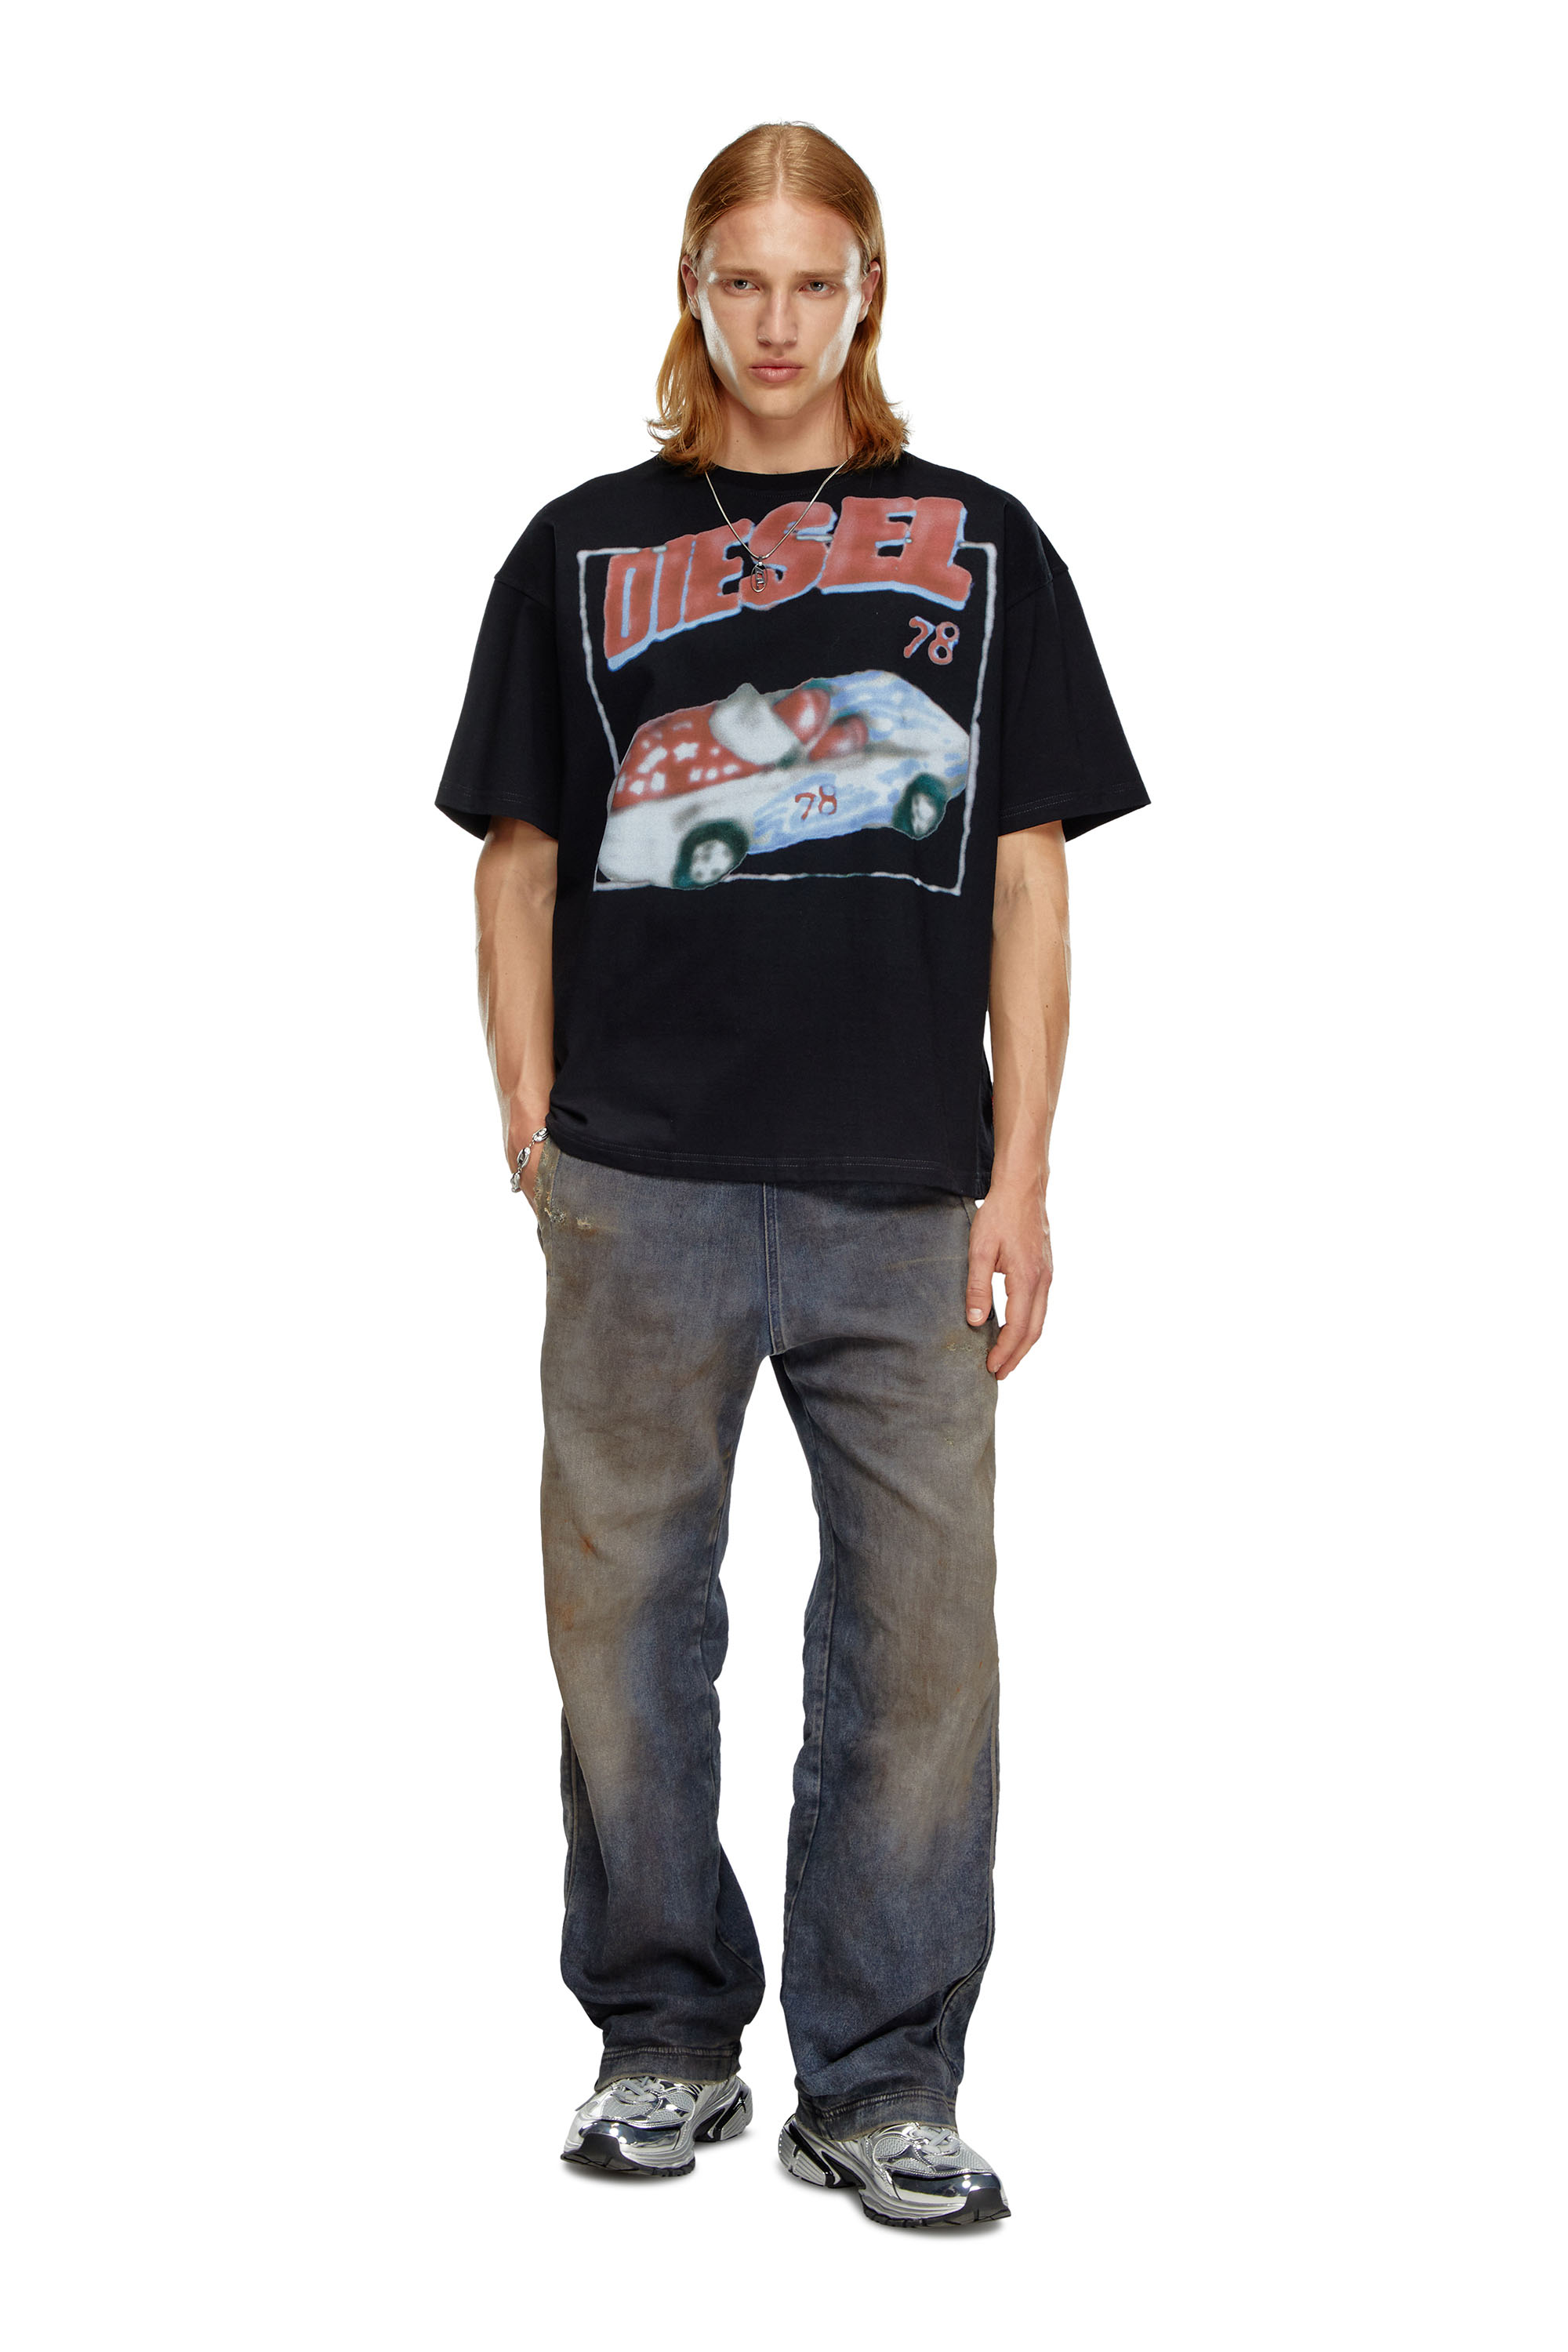 Diesel - T-BOXT-Q17, Hombre Camiseta con estampado de auto in Negro - Image 3